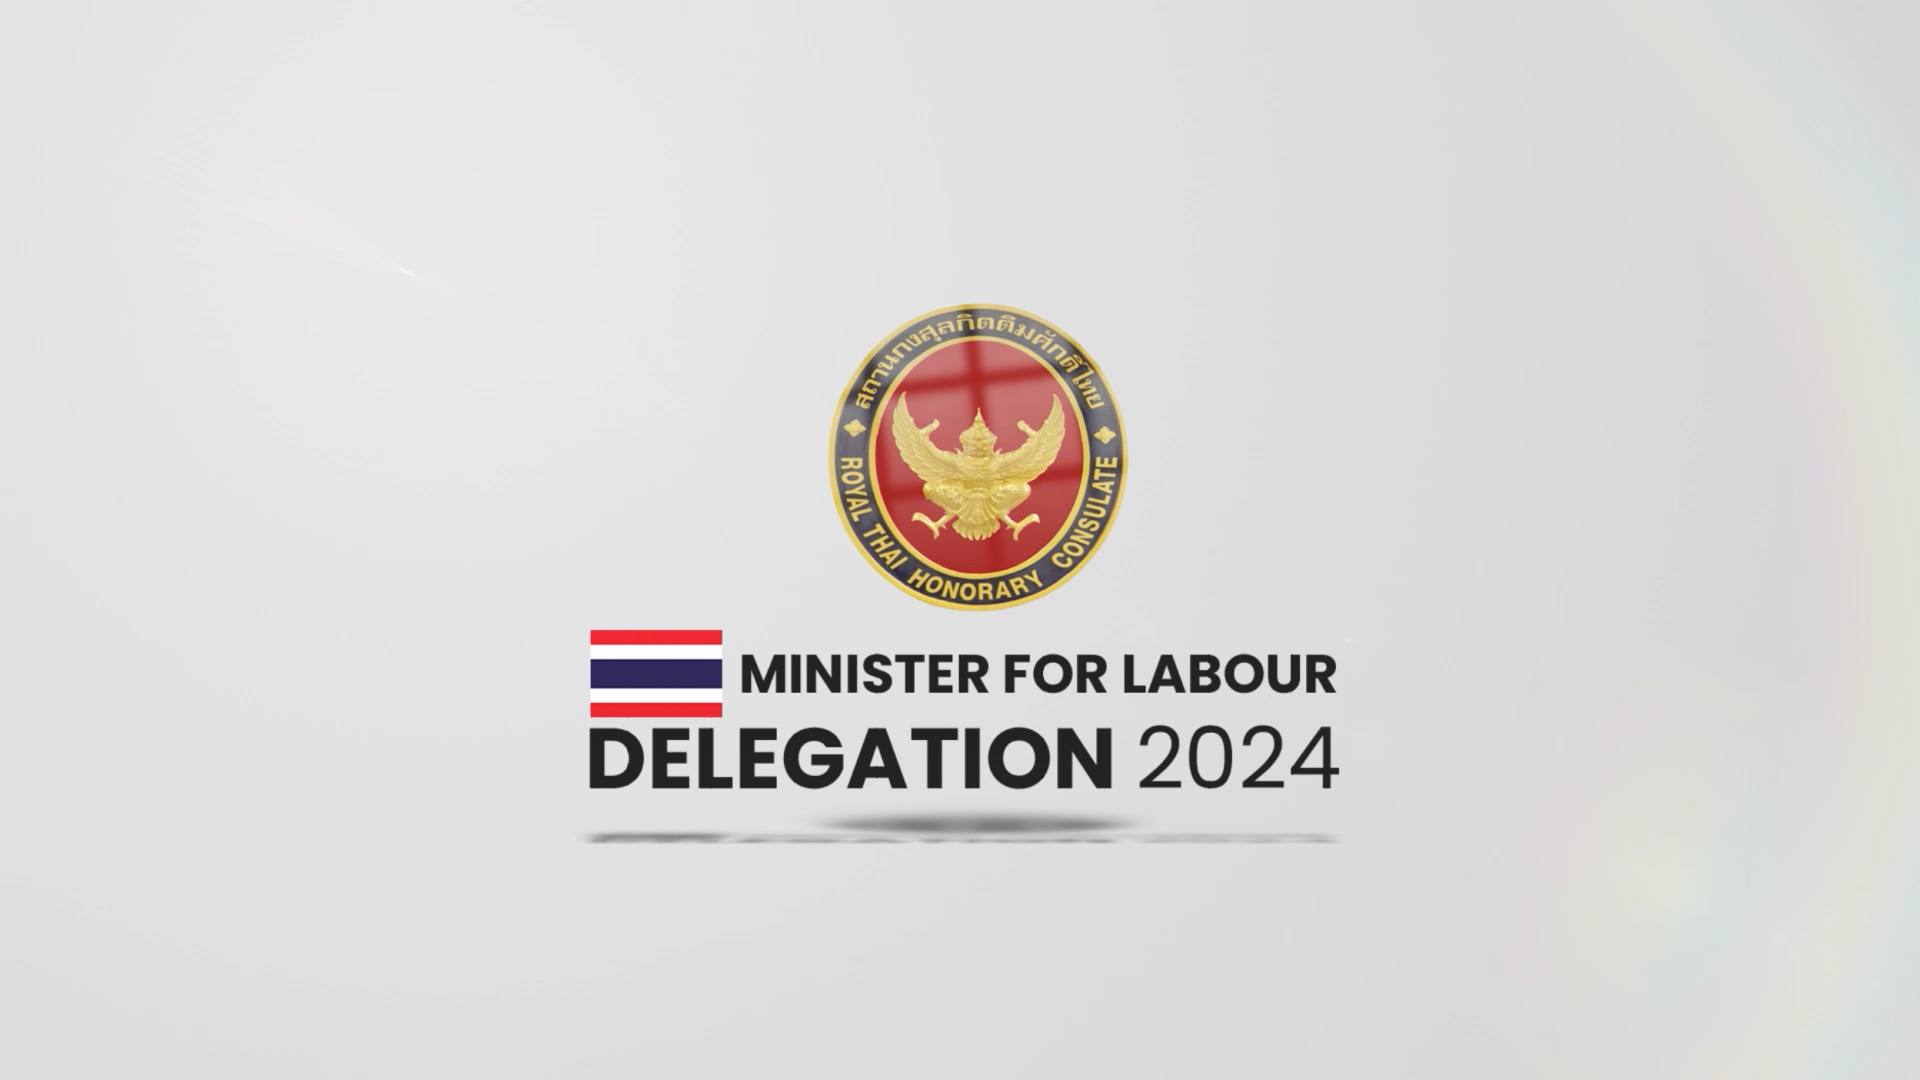 Minister for Labour Delegation 2024 - Kingdom of Thailand